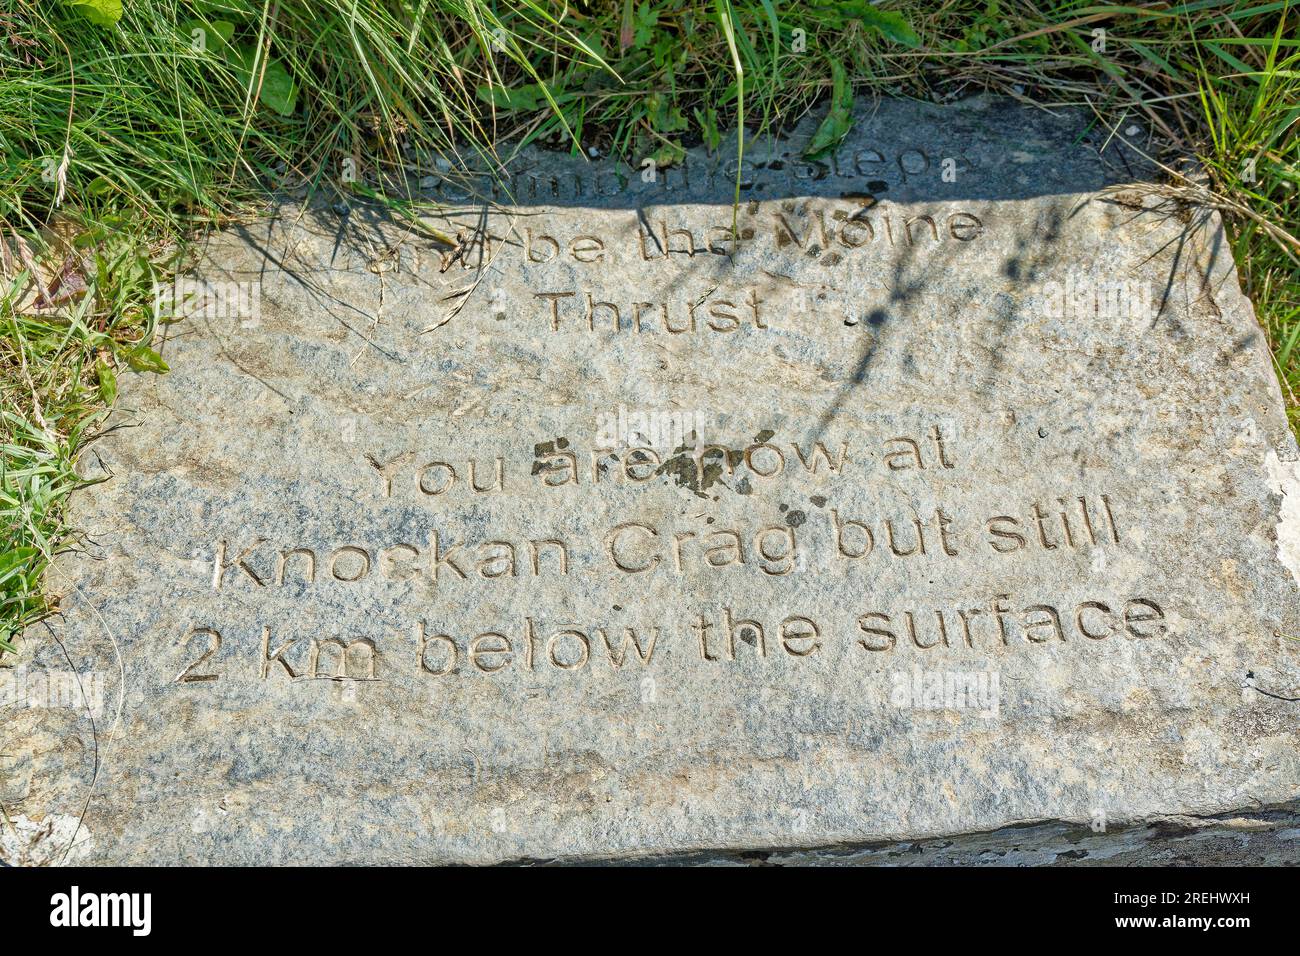 Knockan Crag West Highlands Geopark Scotland Summer Moine Thrust e informazioni scritte su una lastra di roccia Foto Stock